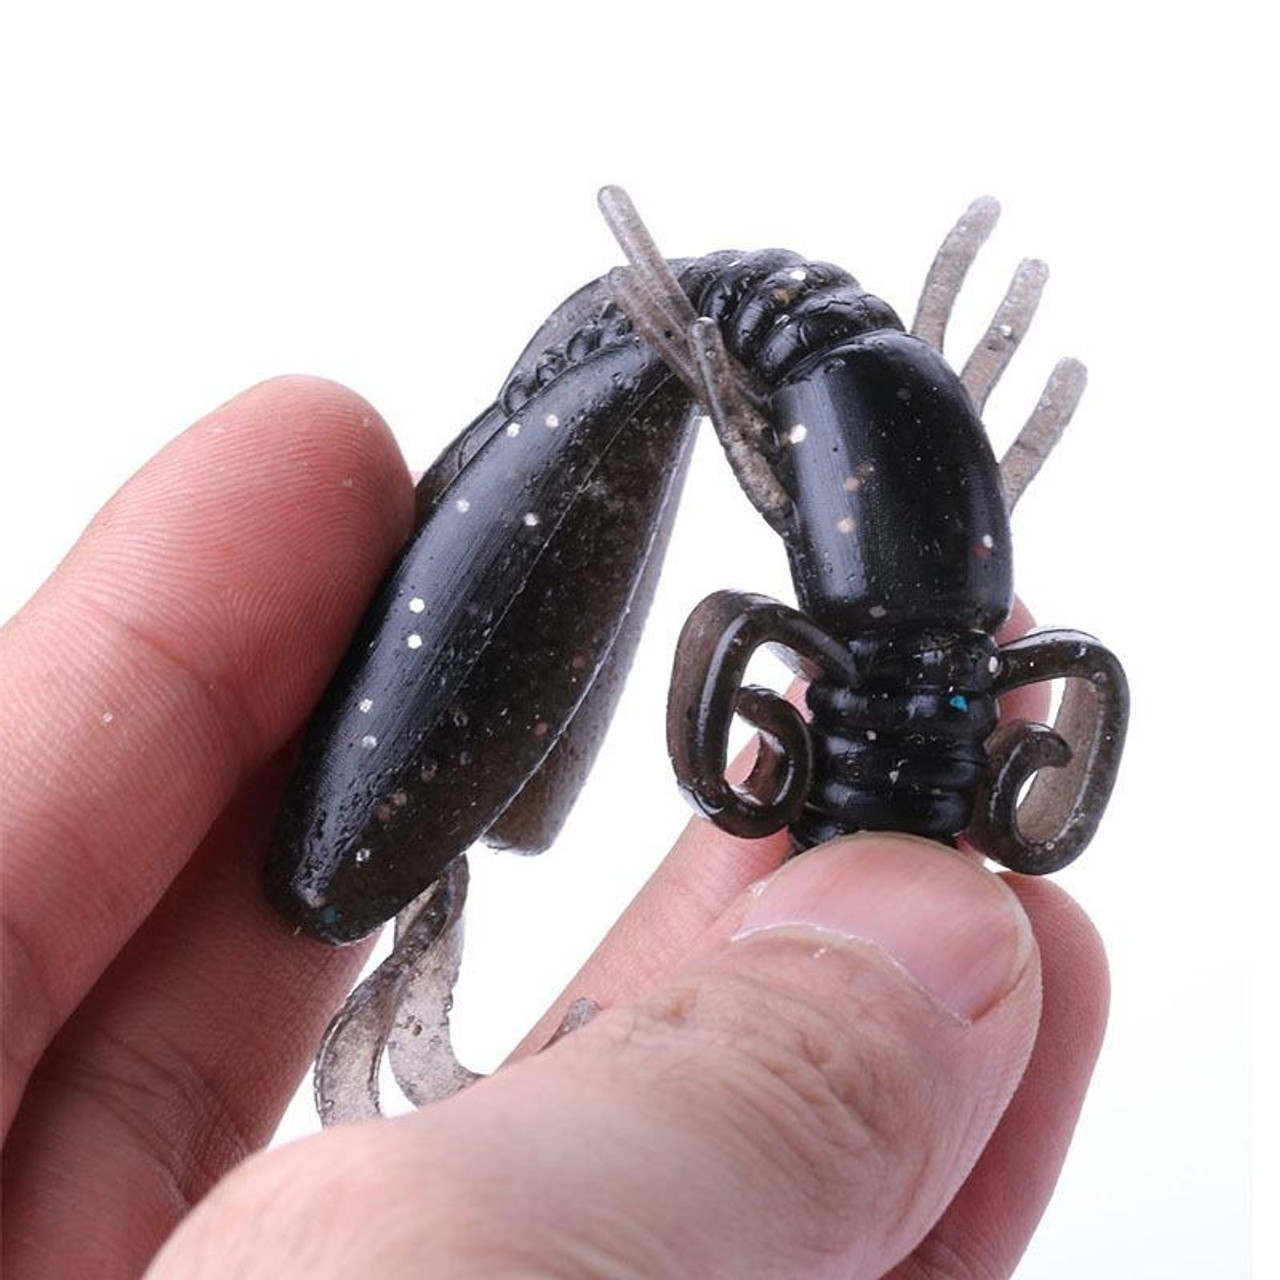 HENGJIA SO02250 5 PCS 9cm/12g Shrimp Shaped Soft Fishing Bait Artificial  Cricket Bait, snatcher